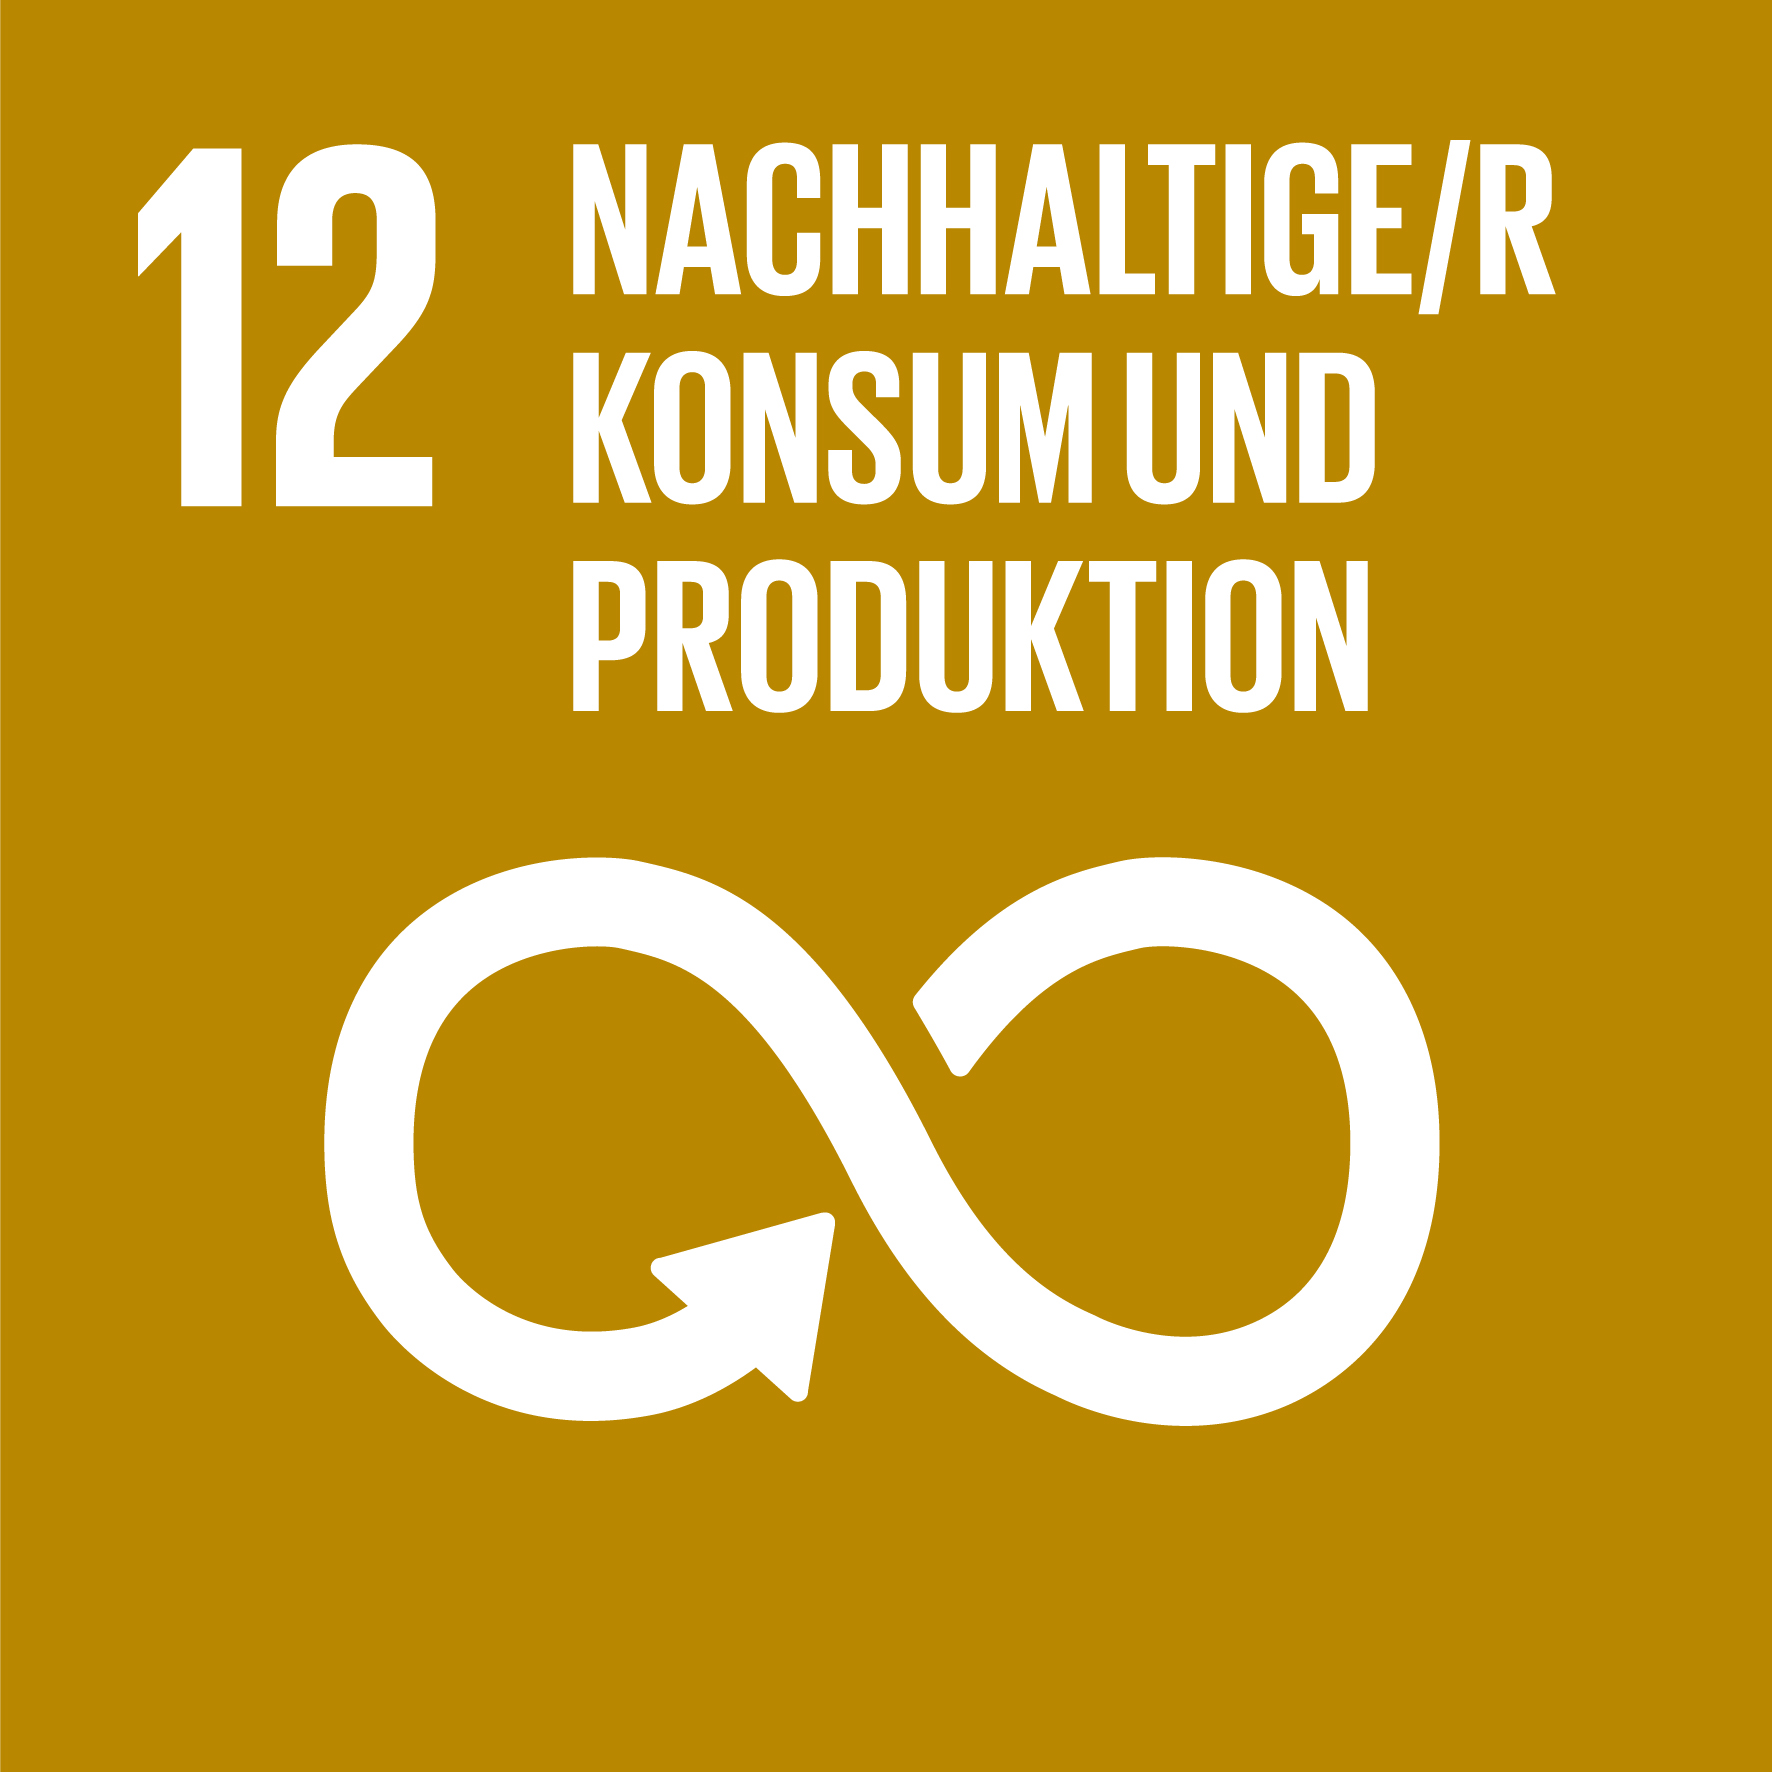 12 Nachhaltige/r Konsum und Produktion